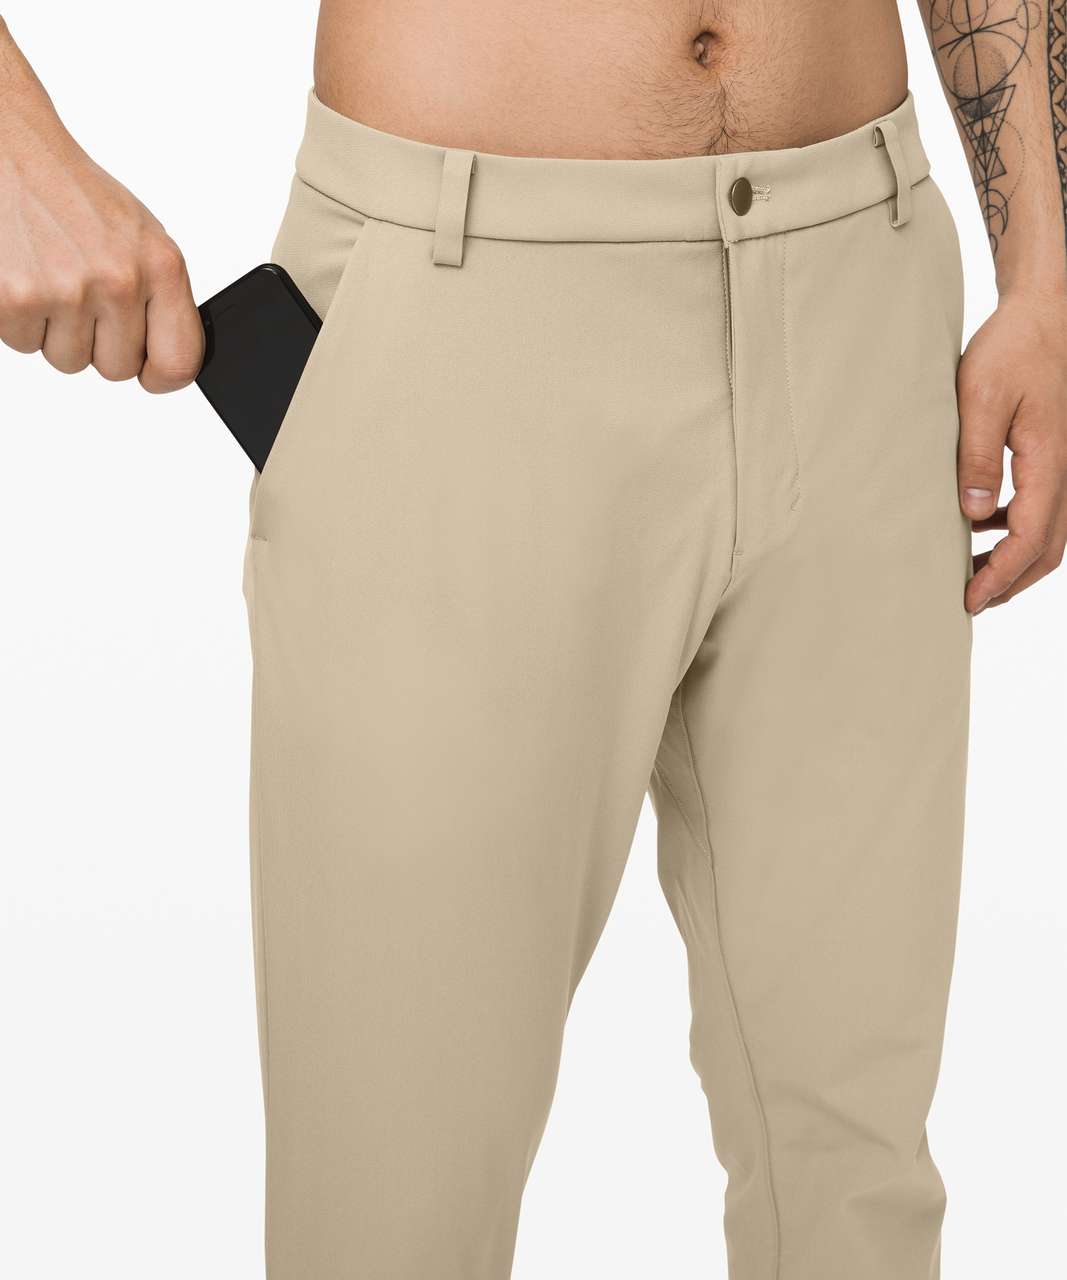 Lululemon Men's Pants Commission Pant Classic 32 Length M5710S Size 31